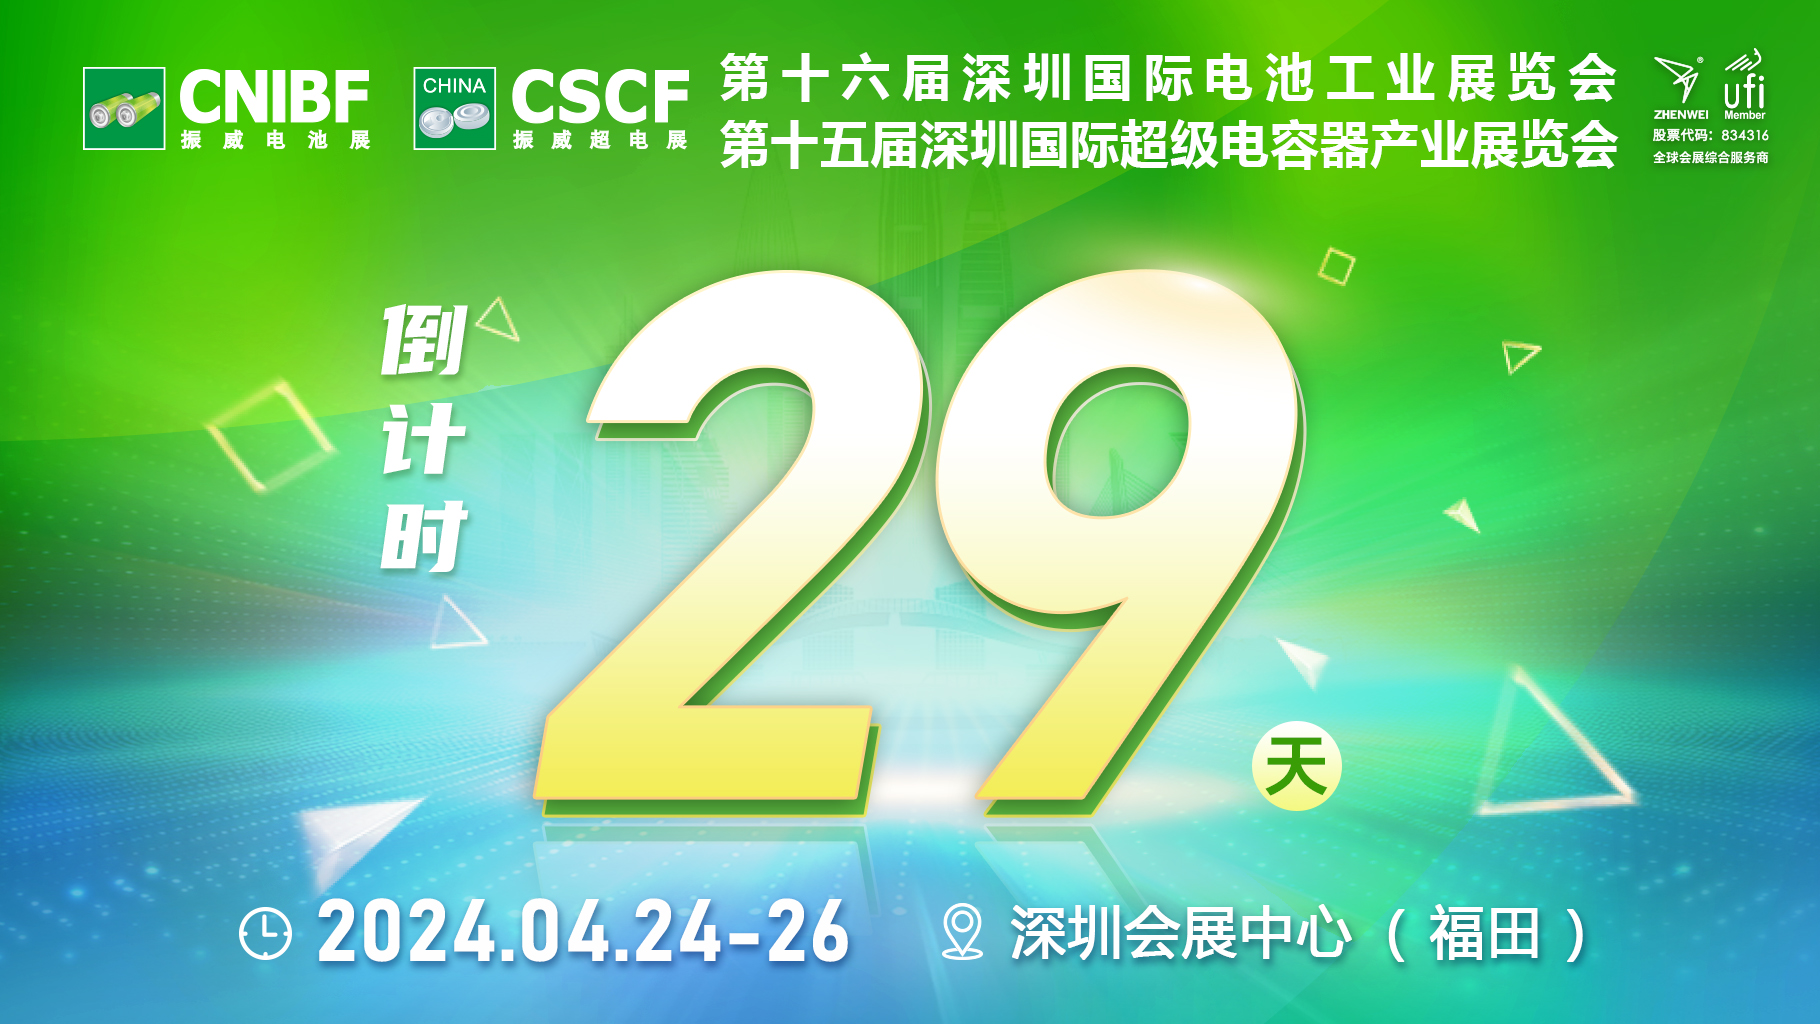 倒计时29天，振威电池工业展/超级电容器展与您相约深圳，共同“链”接全球 扩容海内外“朋友圈”！